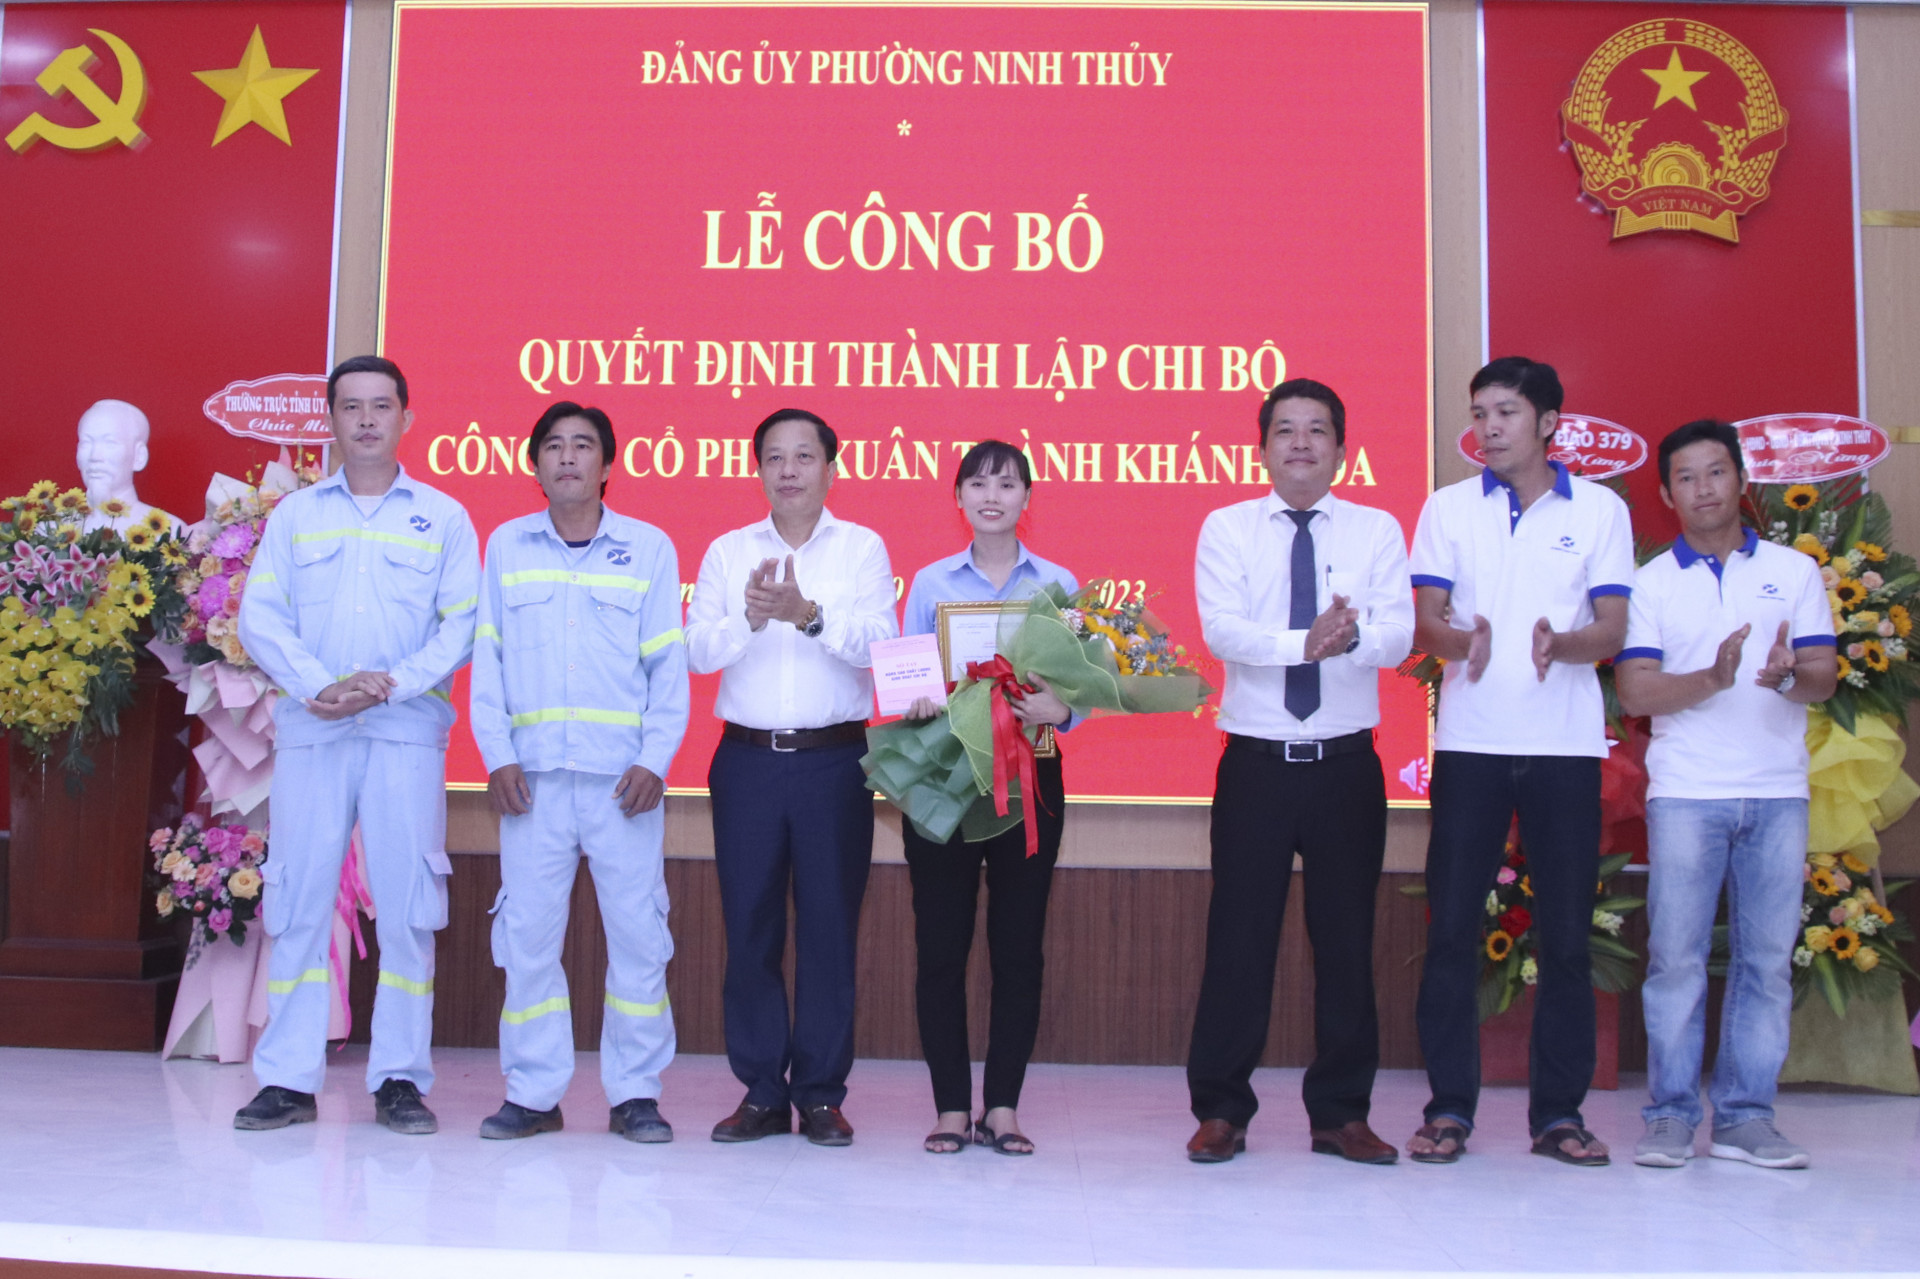 Đồng chí Hà Quốc Trị trao quyết định thành lập Chi bộ Công ty Cổ phần Xuân Thành - Khánh Hòa.